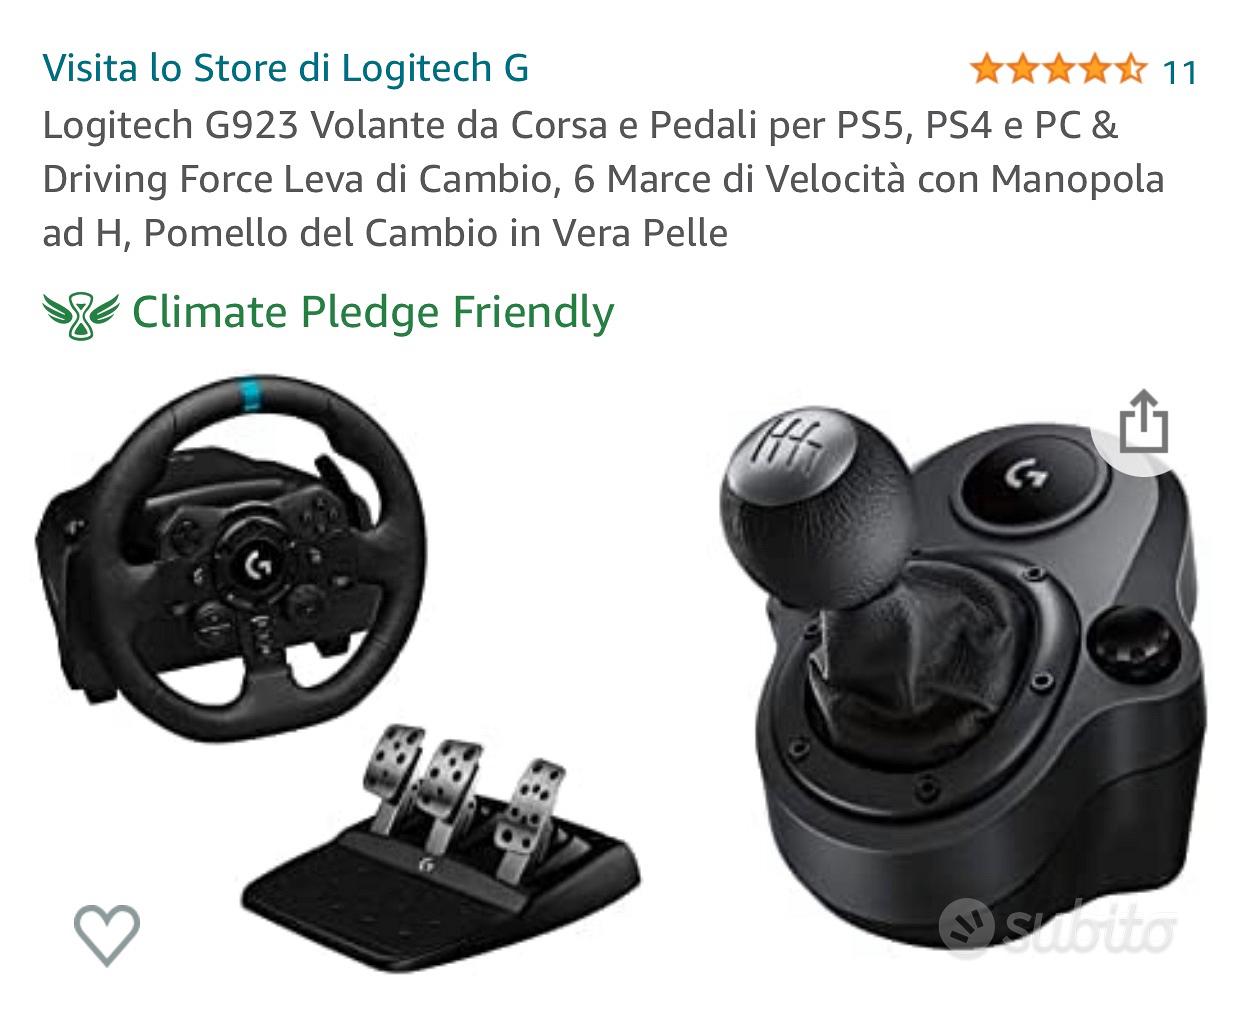 Logitech G923 Volante da Corsa e Pedali per PS5, PS4 e PC & Driving Force  Leva di Cambio, 6 Marce di Velocità con Manopola ad H, Pomello del Cambio